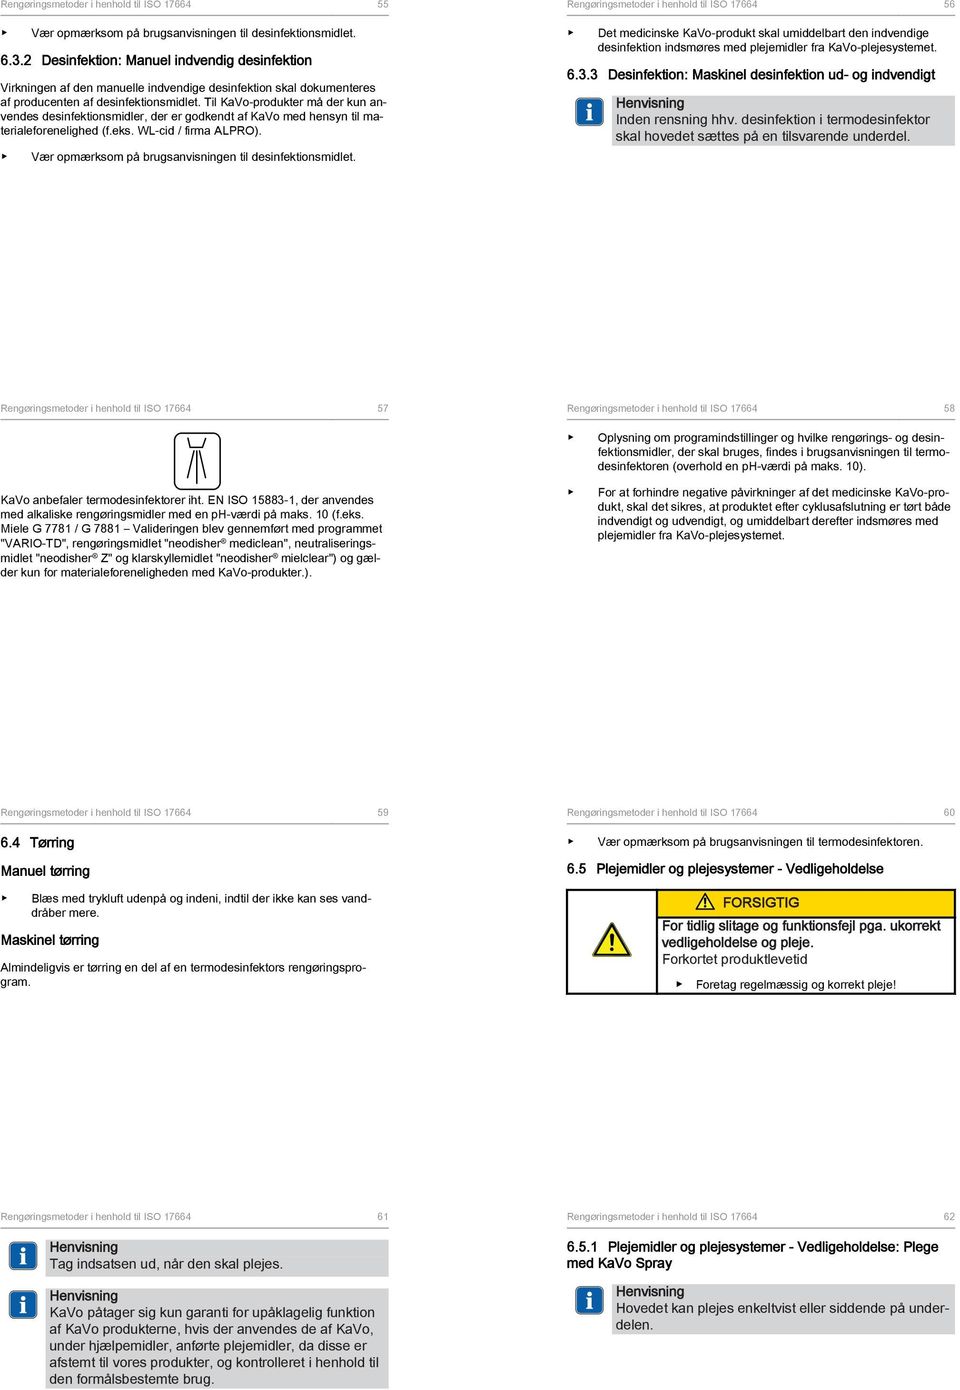 Til KaVo-produkter må der kun anvendes desinfektionsmidler, der er godkendt af KaVo med hensyn til materialeforenelighed (f.eks. WL-cid / firma ALPRO).